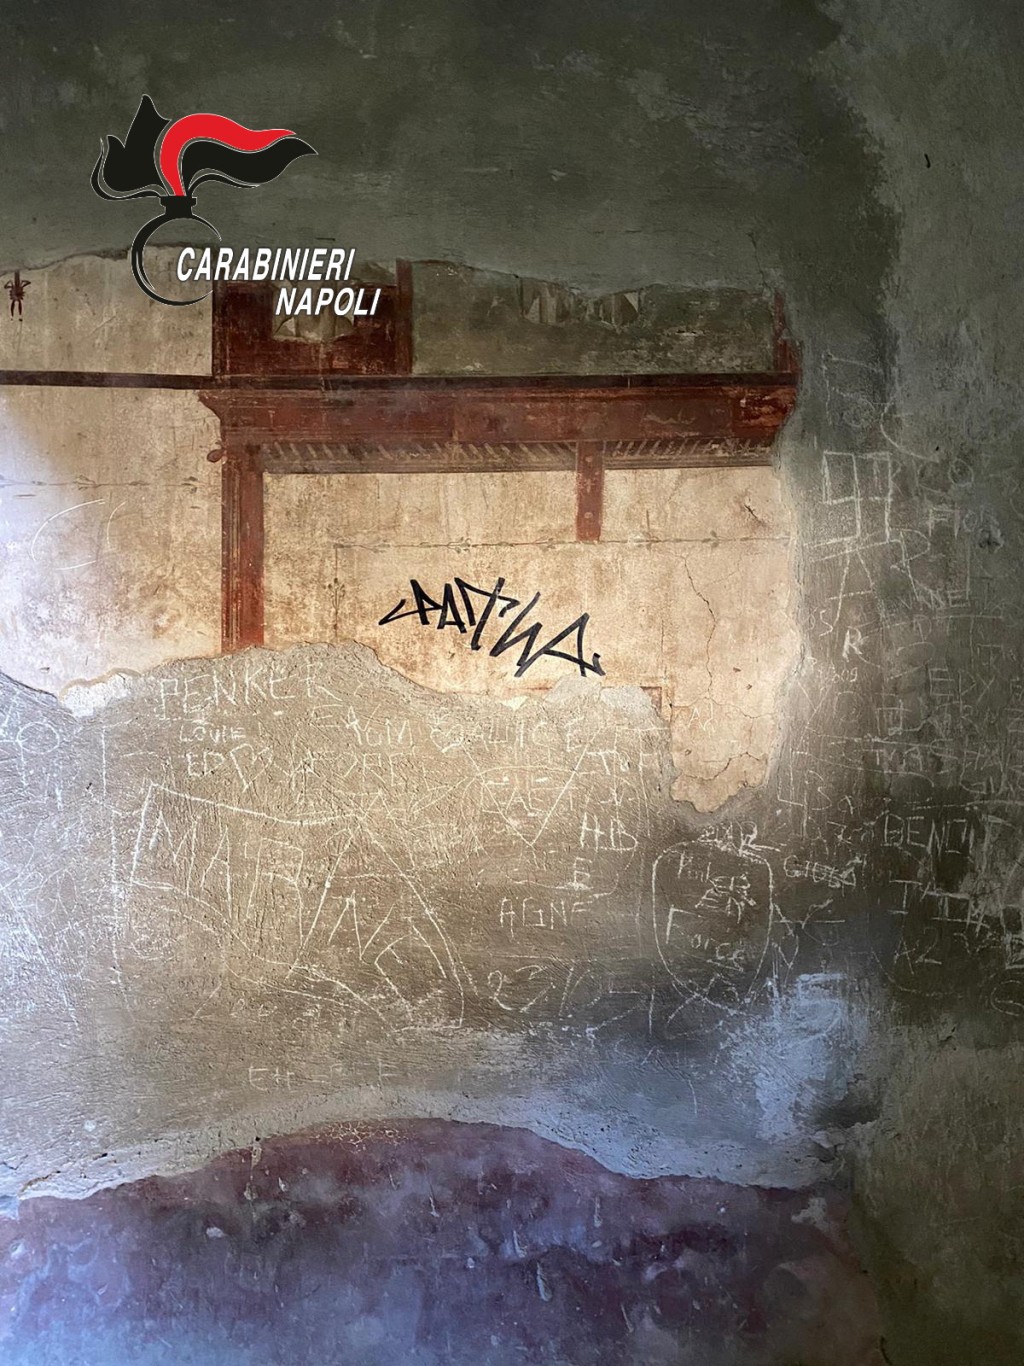 意大利南部古城赫库兰尼姆一处古民居墙面，日前遭荷兰游客以麦克笔签名涂鸦。 路透社